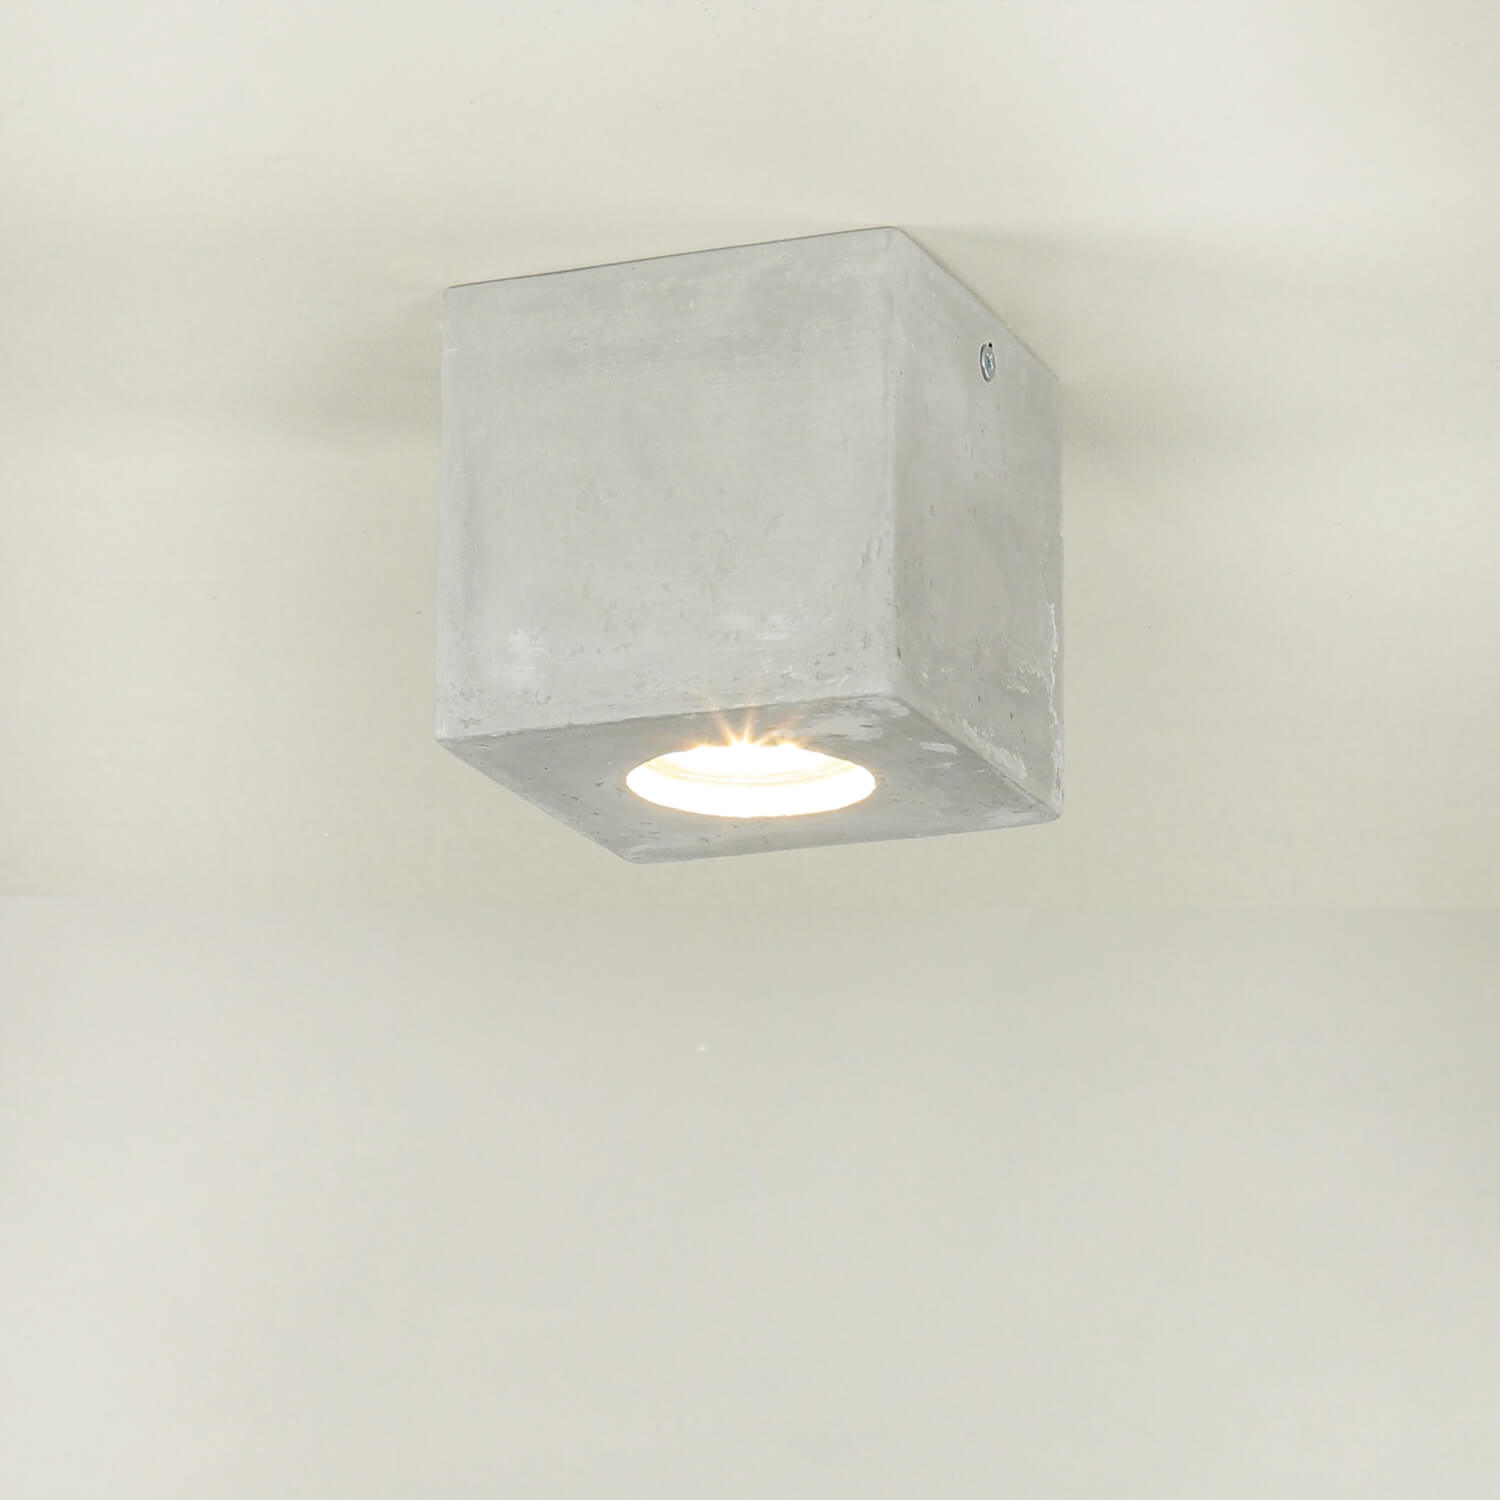 Quadratische Betonlampe Decke B:10cm klein GU10